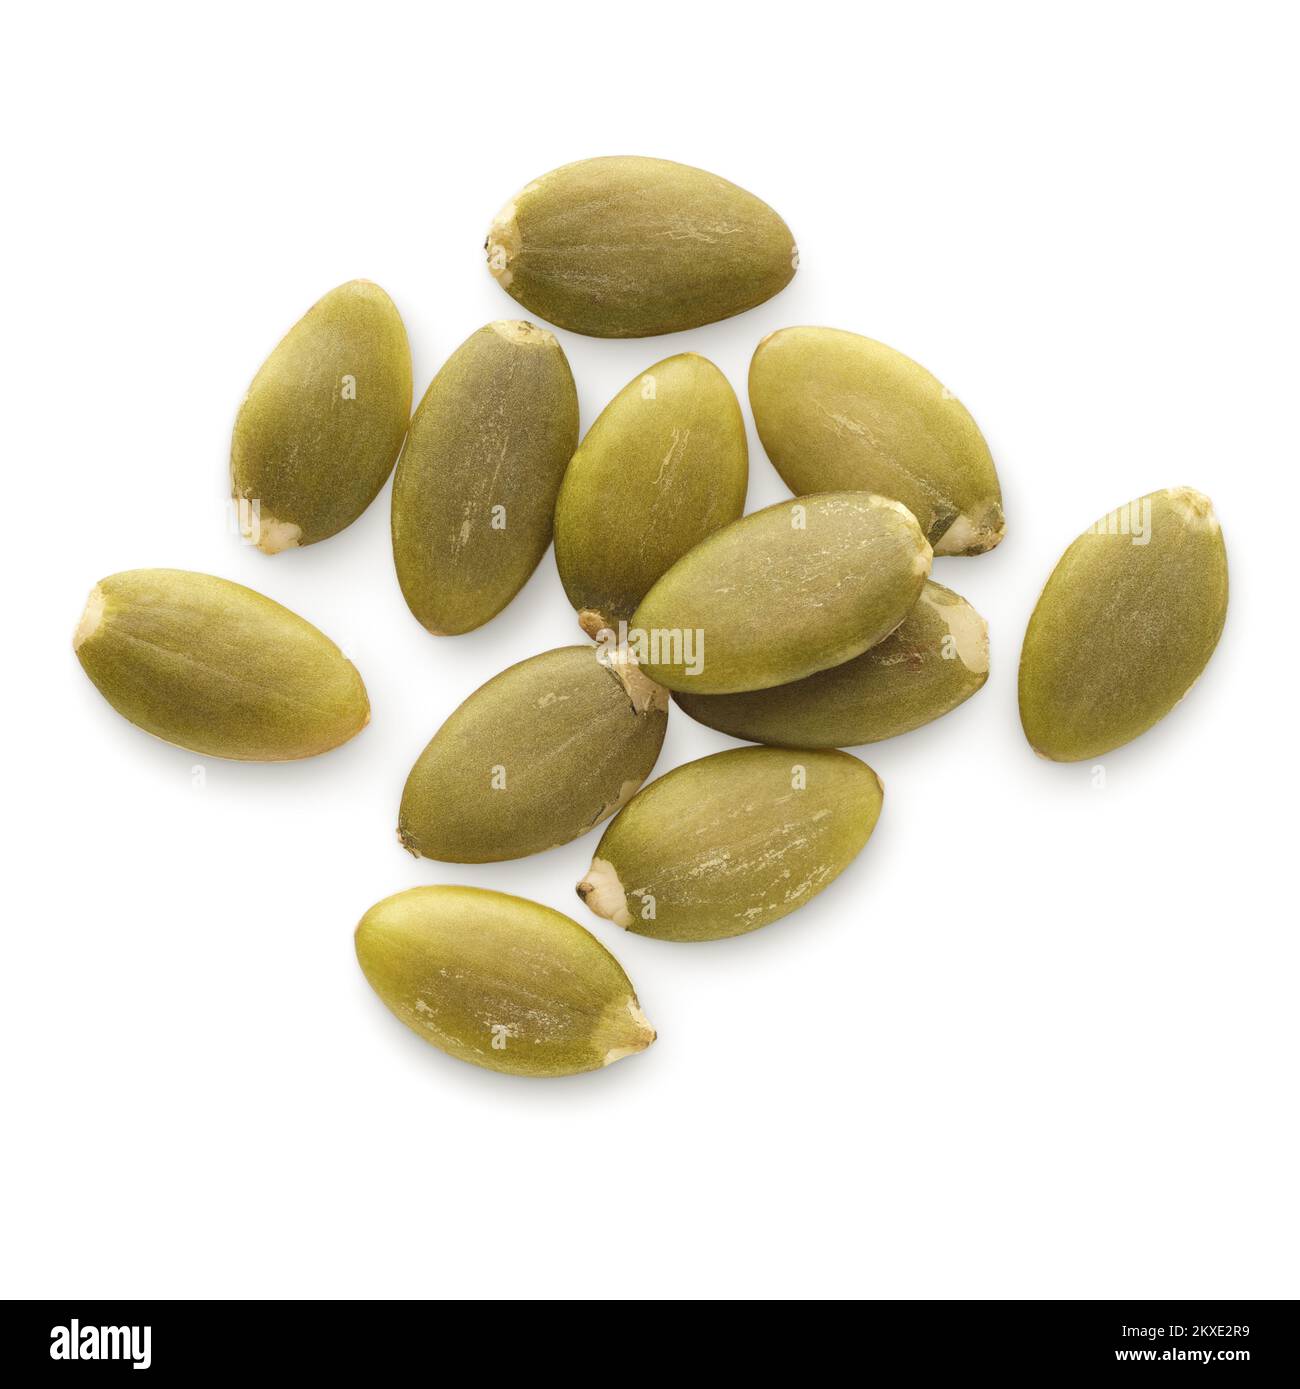 Ingredienti alimentari: Piccolo mucchio di semi di zucca secchi pelati, isolati su fondo bianco Foto Stock